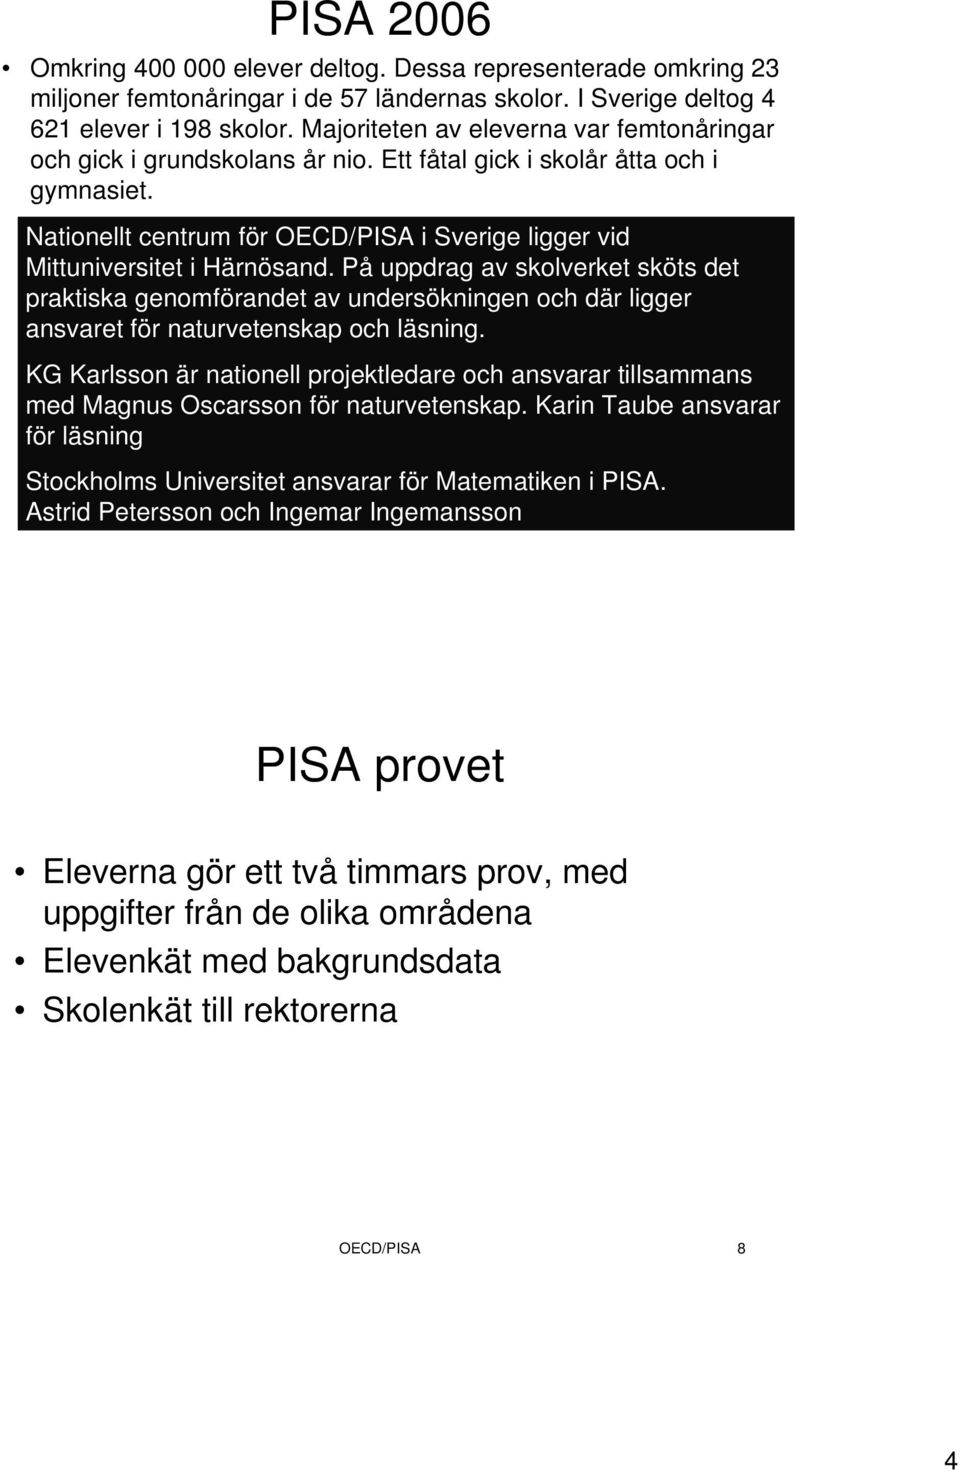 Nationellt centrum för OECD/PISA i Sverige ligger vid Mittuniversitet i Härnösand.